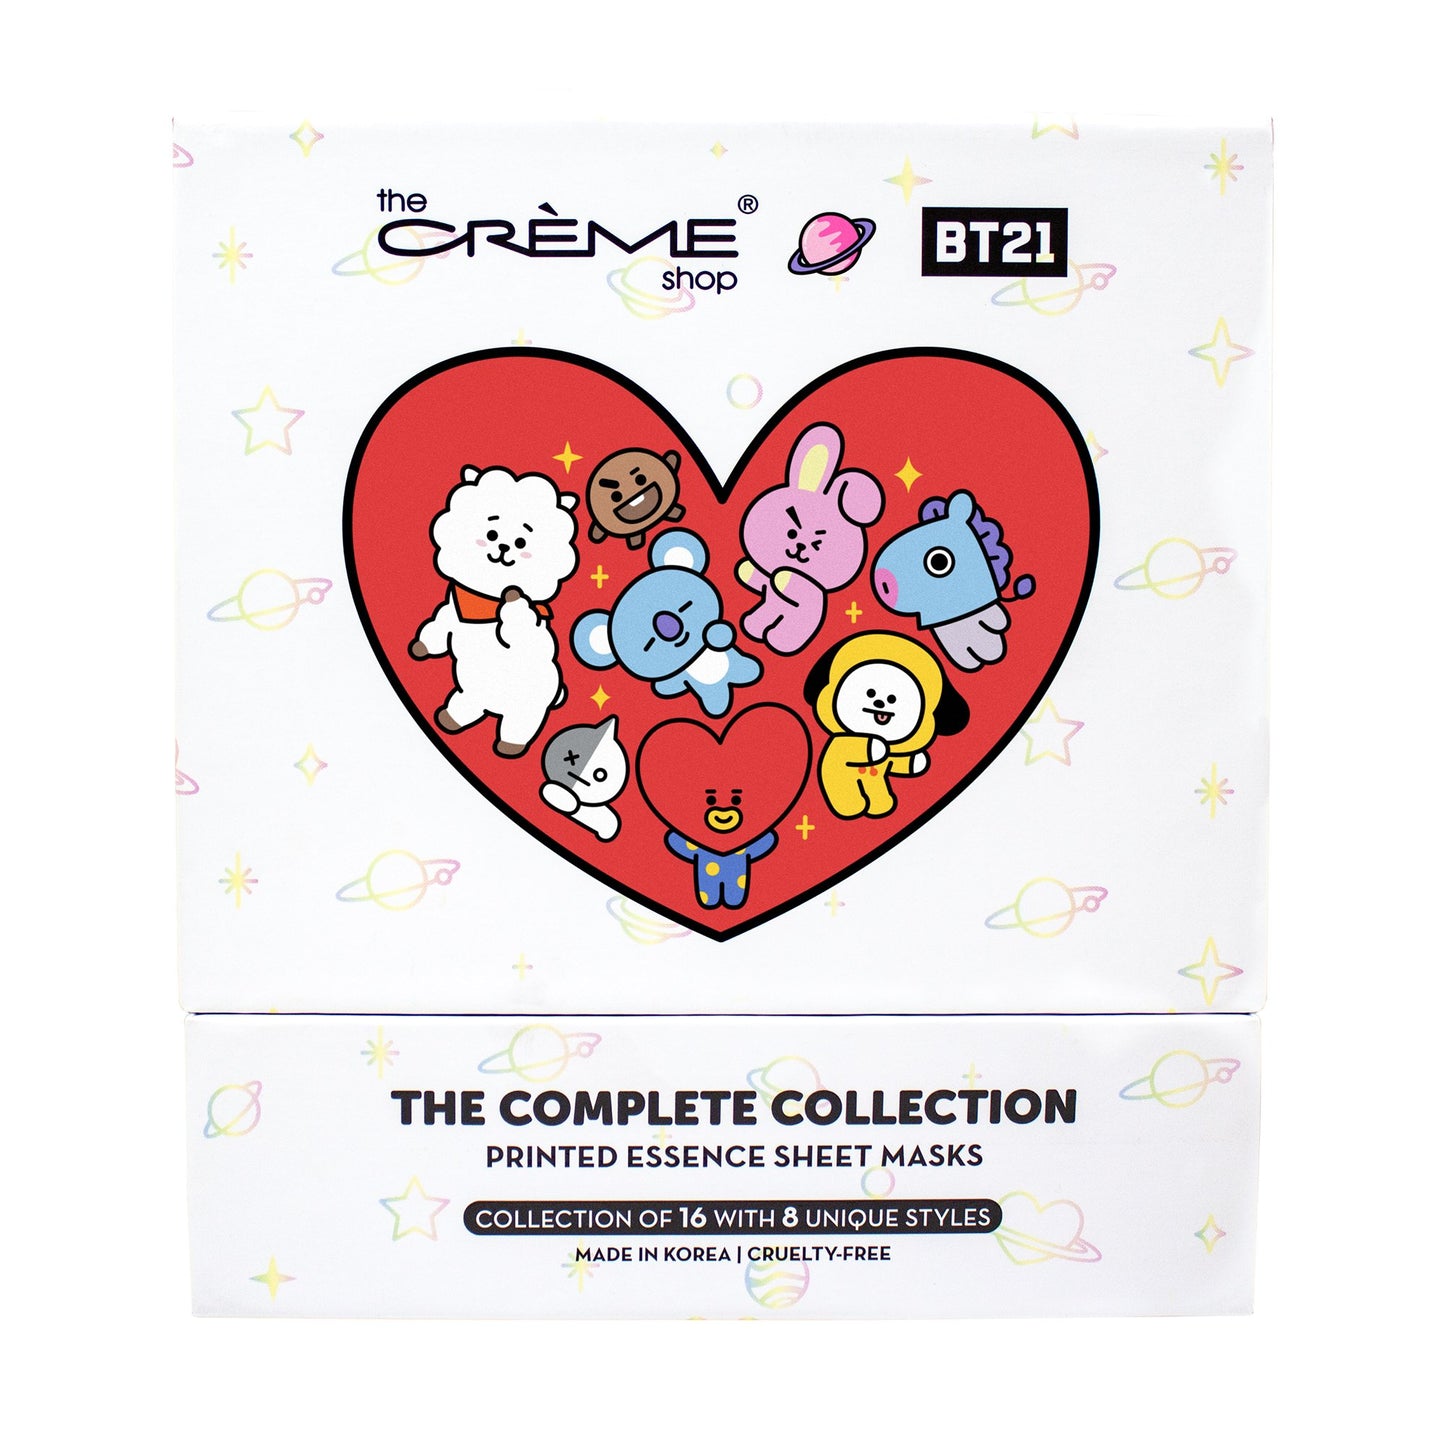 The Crème Shop | BT21: Complete Printed Essence Sheet Mask Collection ($64 Value) Bundles The Crème Shop x BT21 